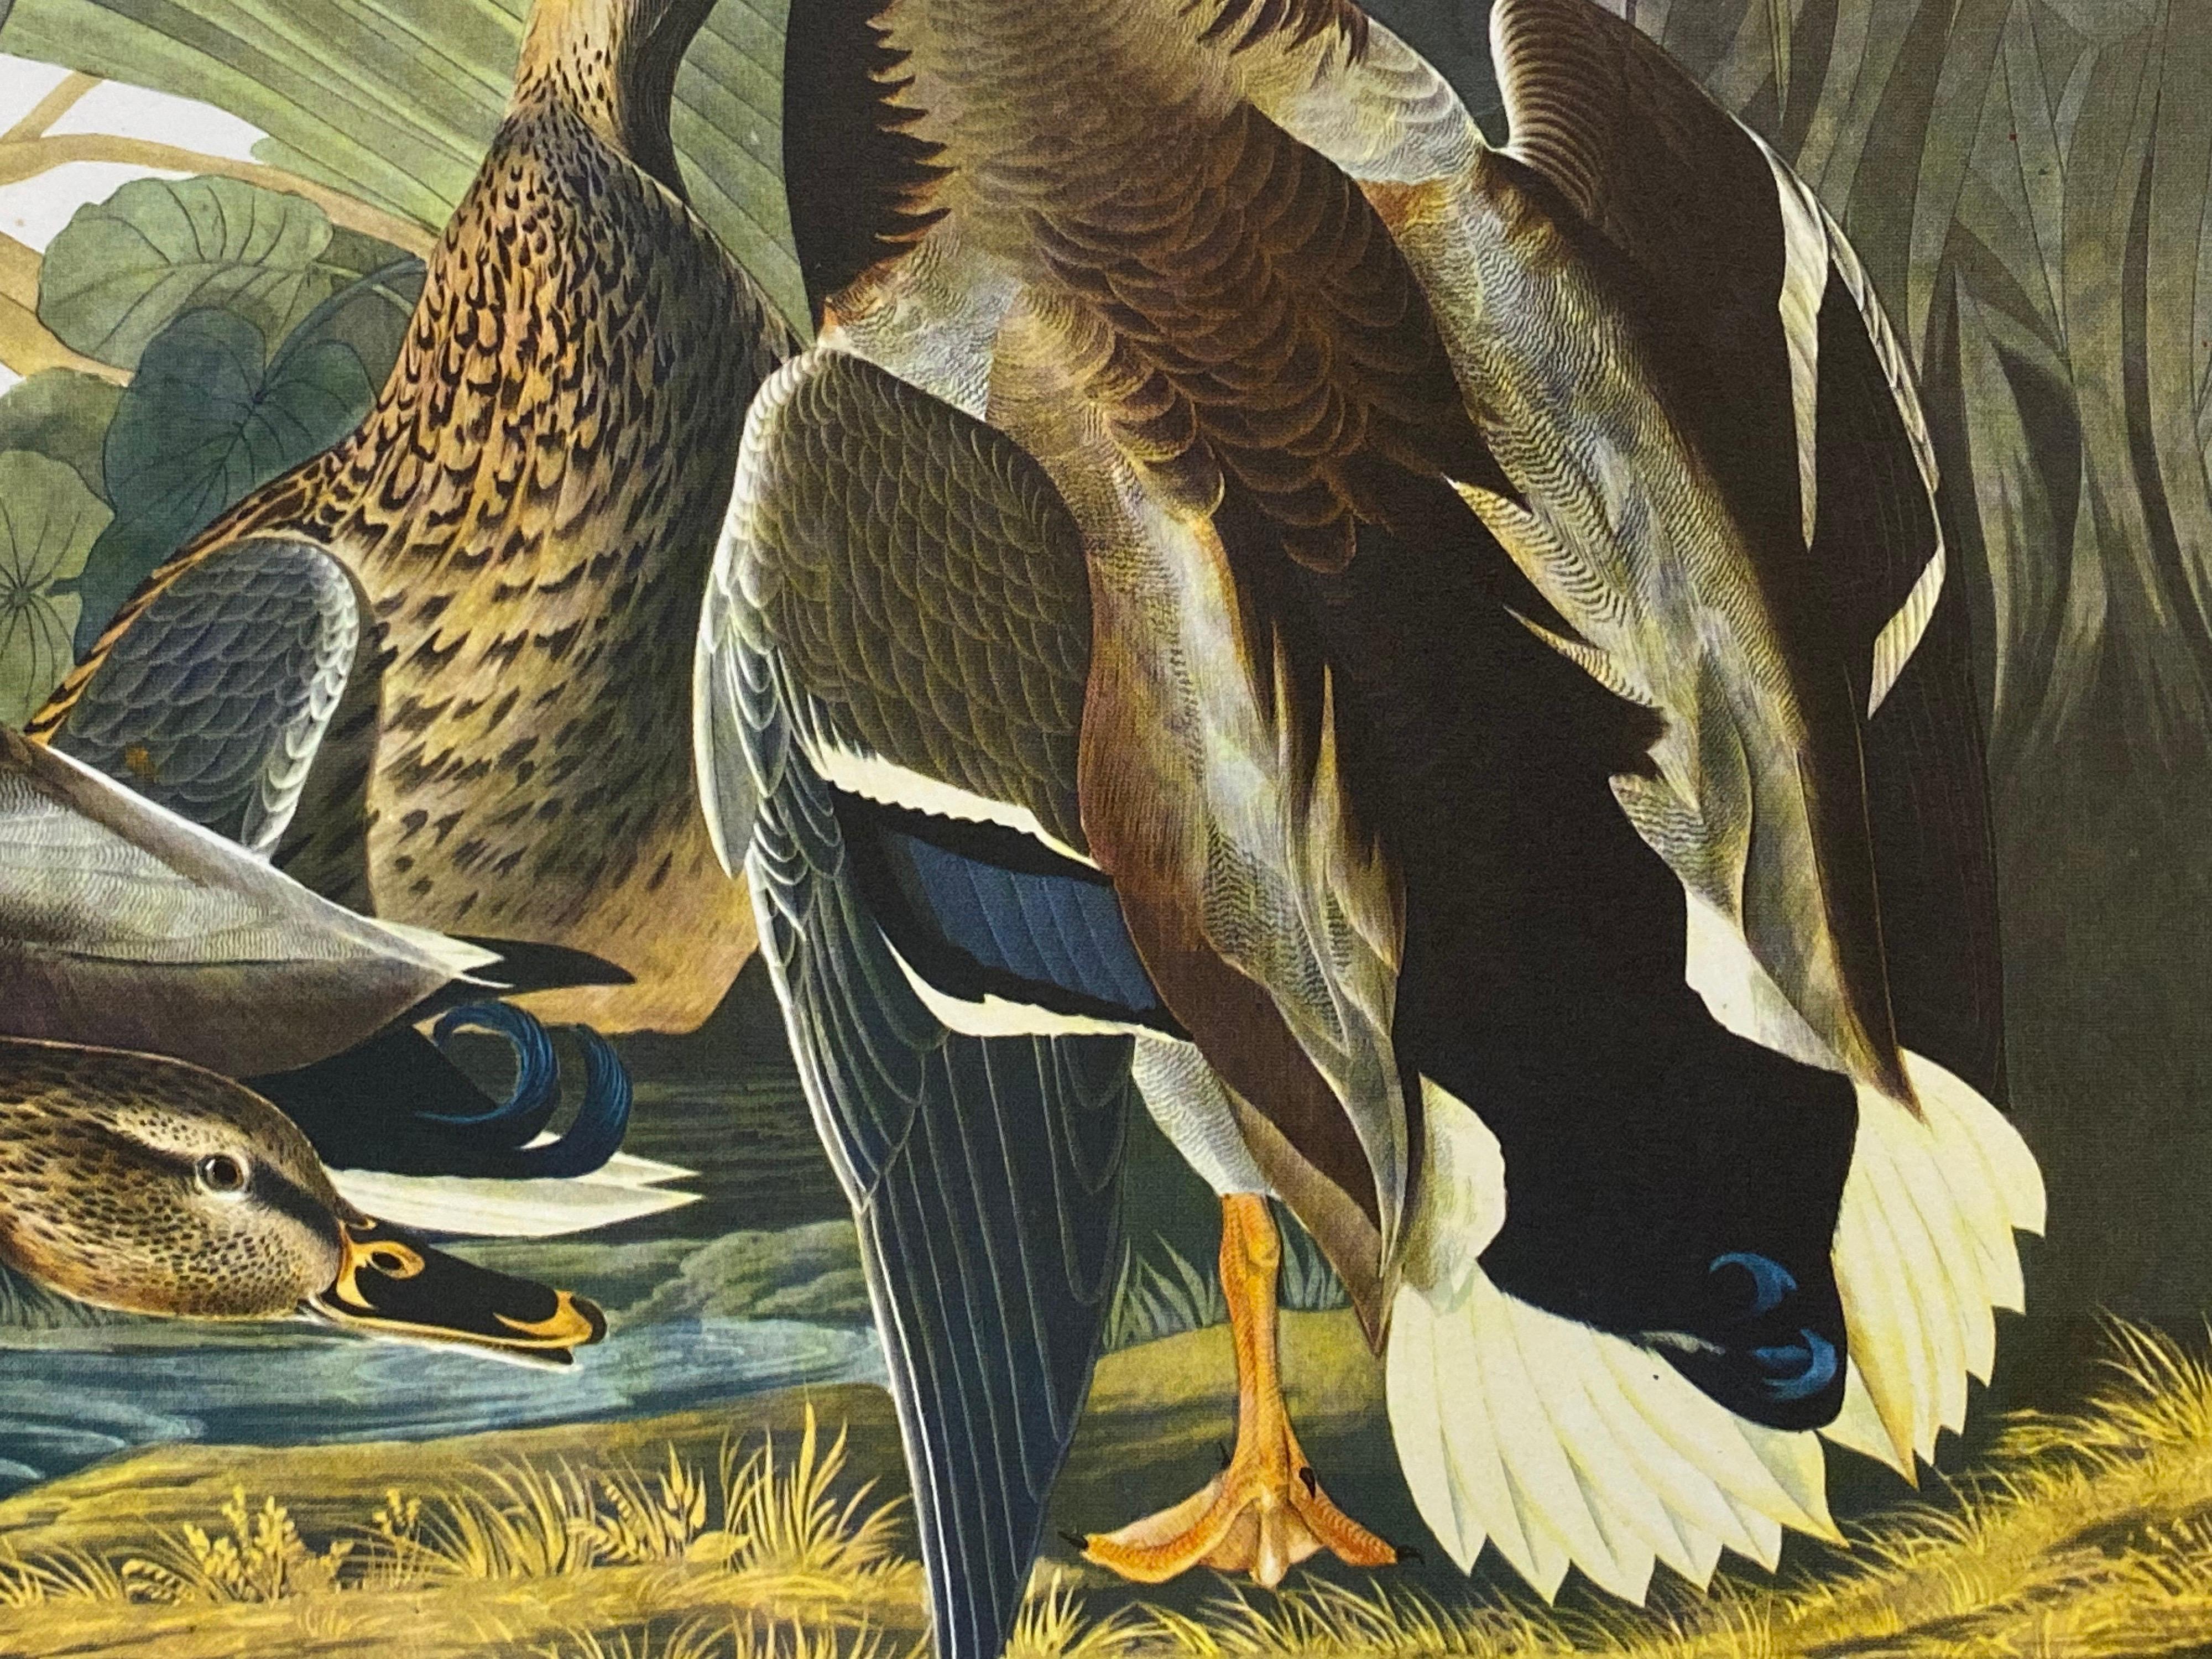 Impression d'oiseau classique, 
d'après John James Audubon, 
imprimé par Harry N. Abrams, Publishers, New York
non encadré, 17 x 14 pouces impression couleur sur papier
état : très bon
provenance : d'un collectionneur privé ici au Royaume-Uni.